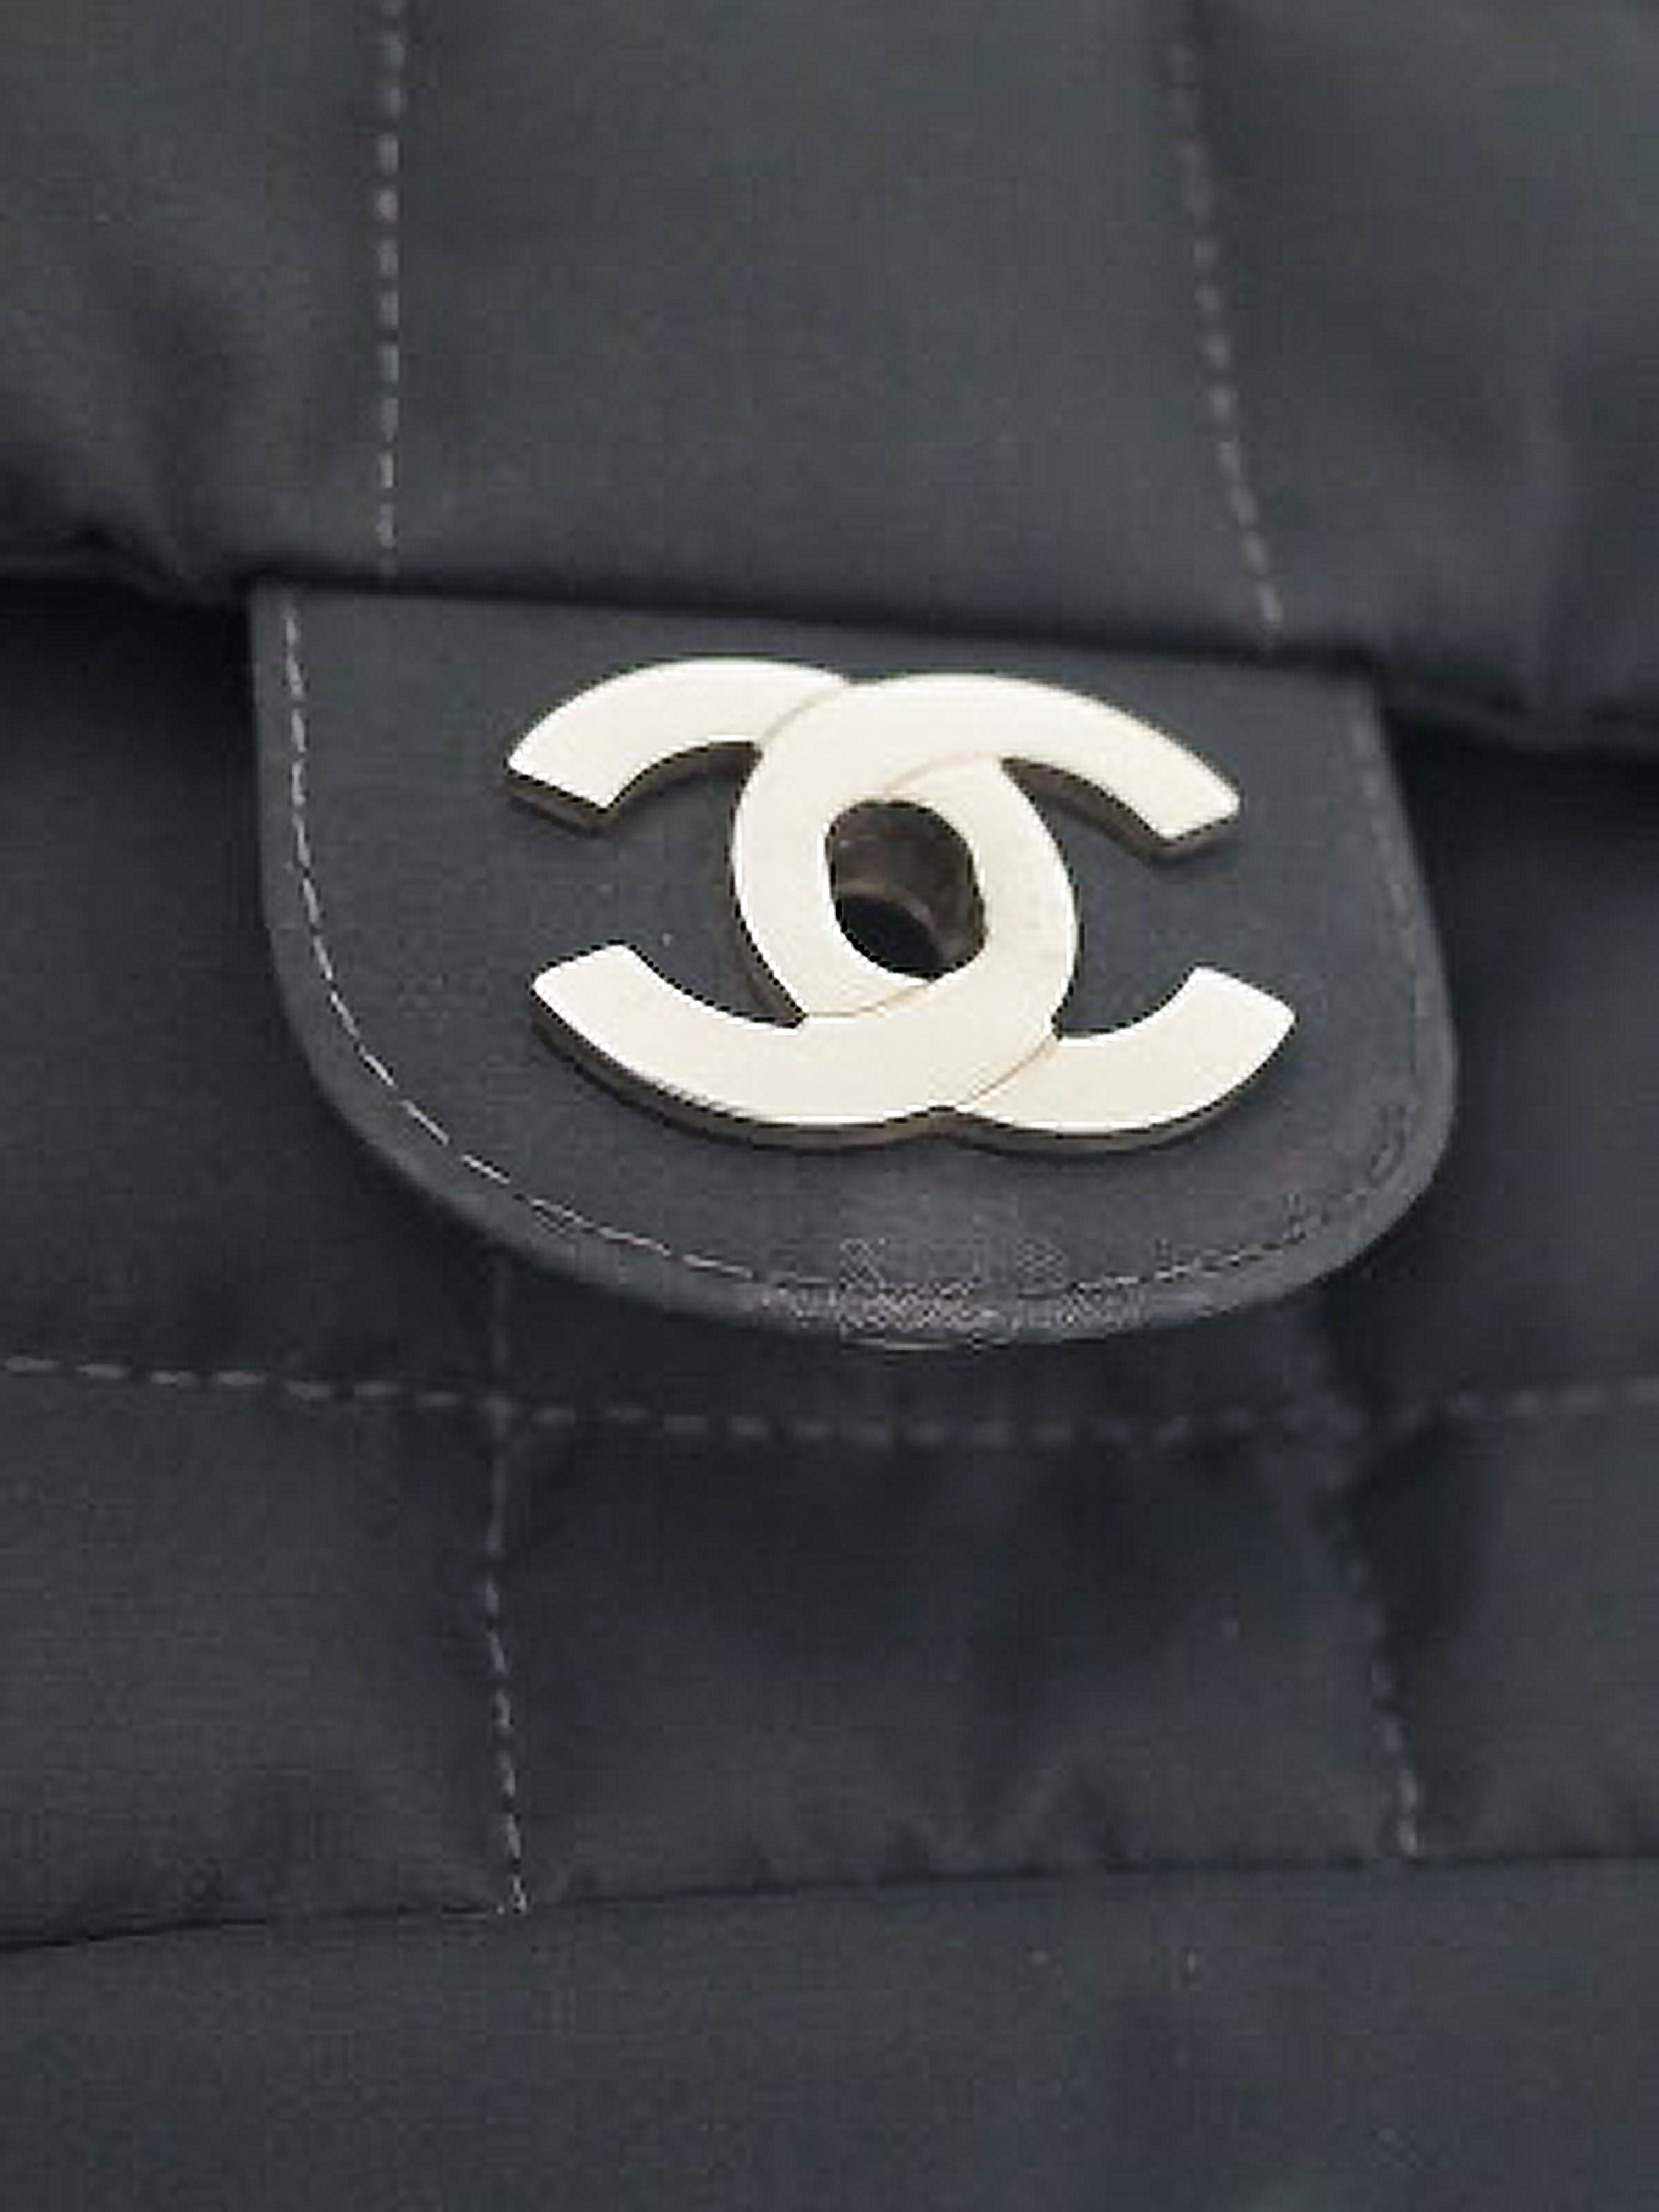 Chanel 2002 Black Nylon Chocolate Bar Bag · INTO